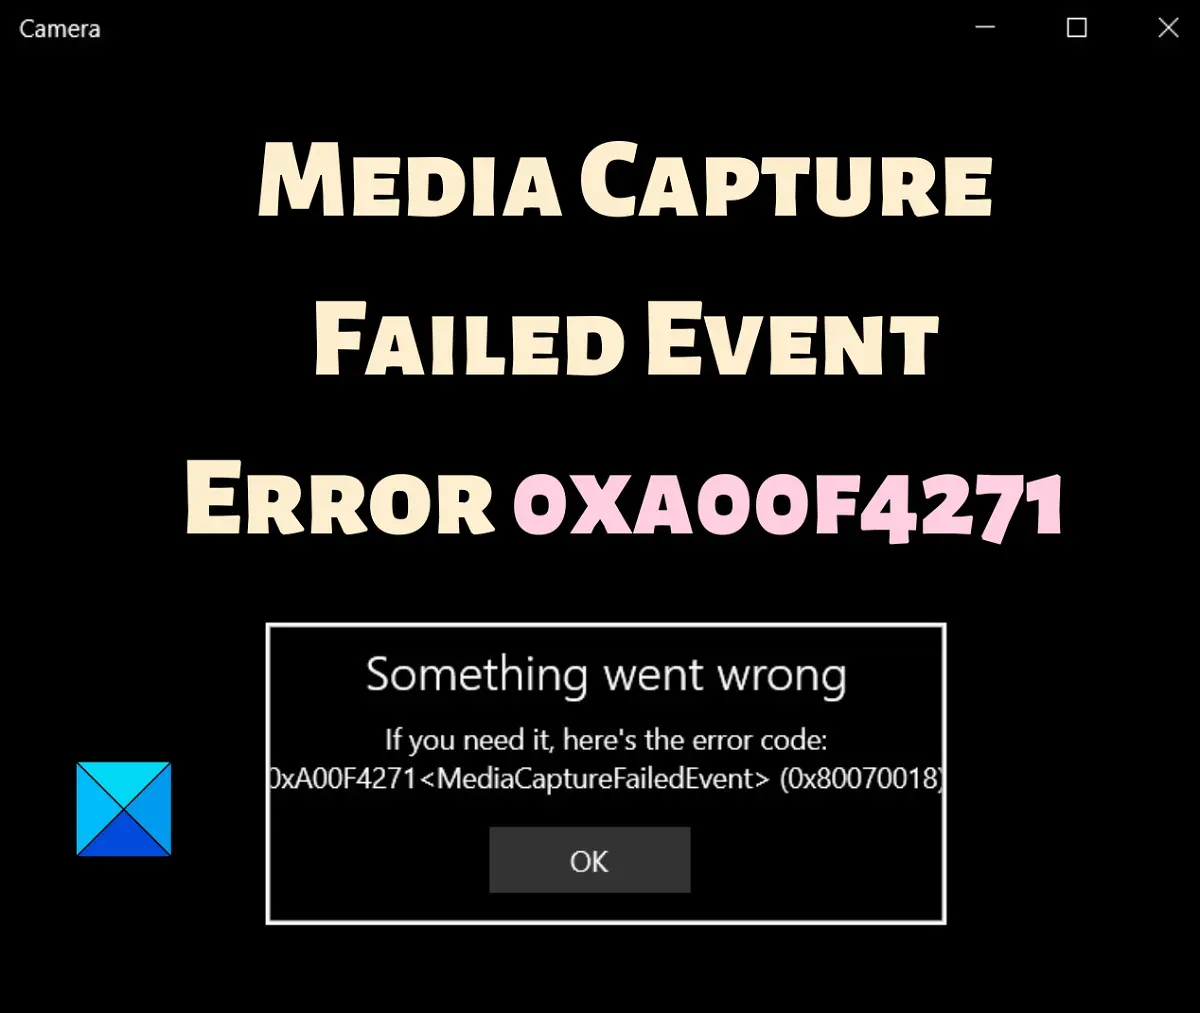 Error de evento de captura de medios fallido 0xa00f4271